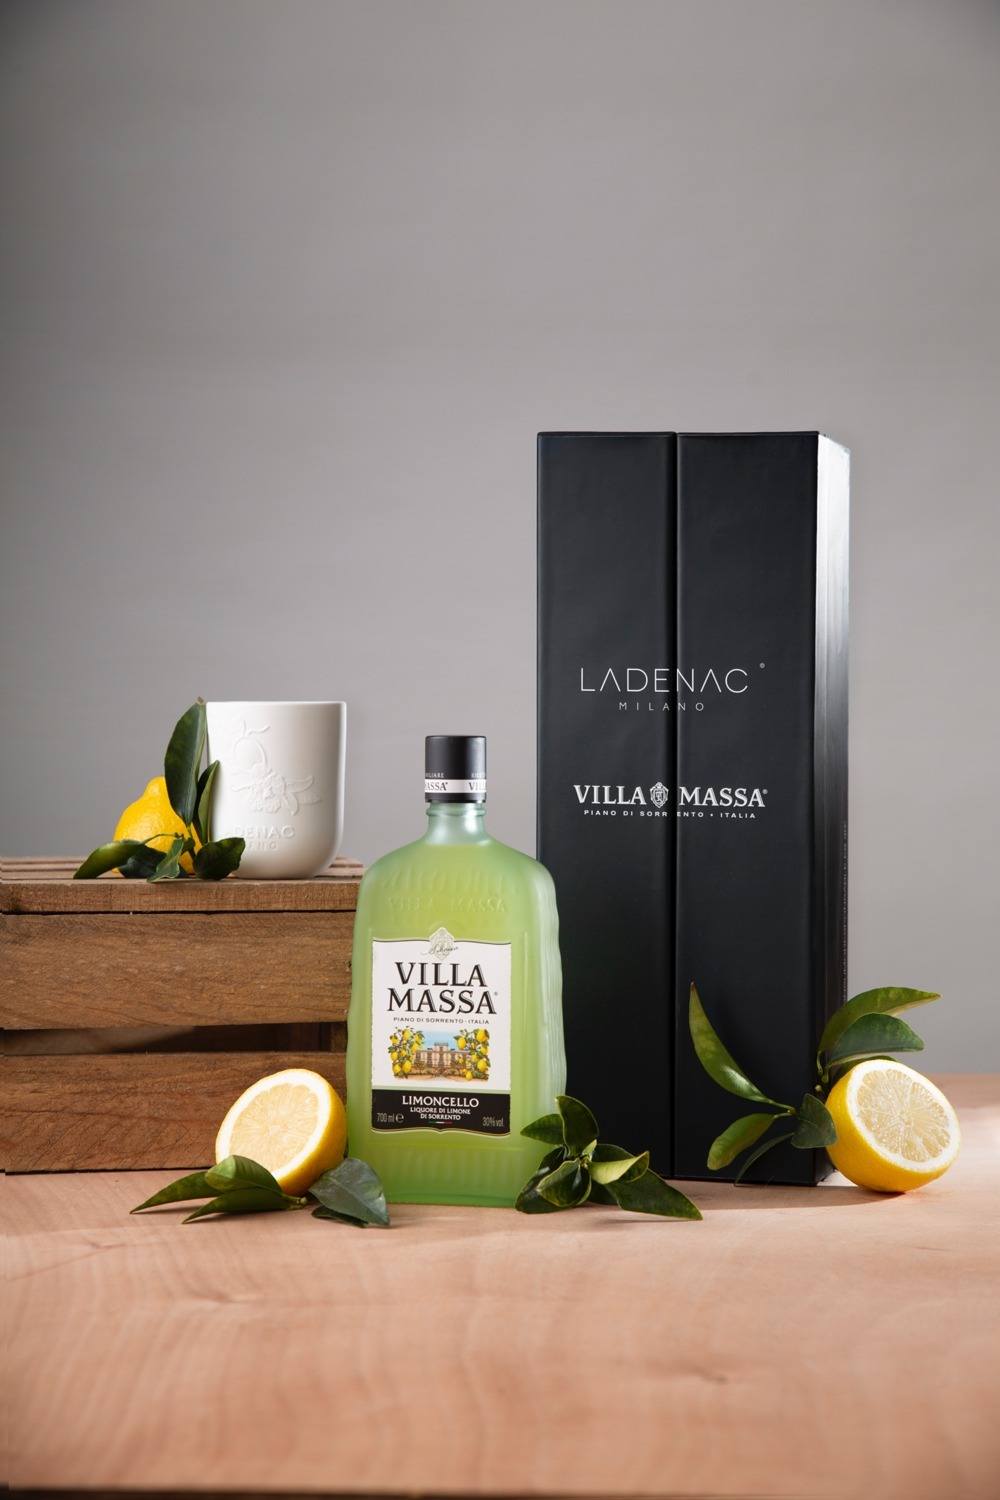 imagen 2 de De limoncello y limón, así es el sugerente pack de regalo de Villa Massa y Ladenac Milano.